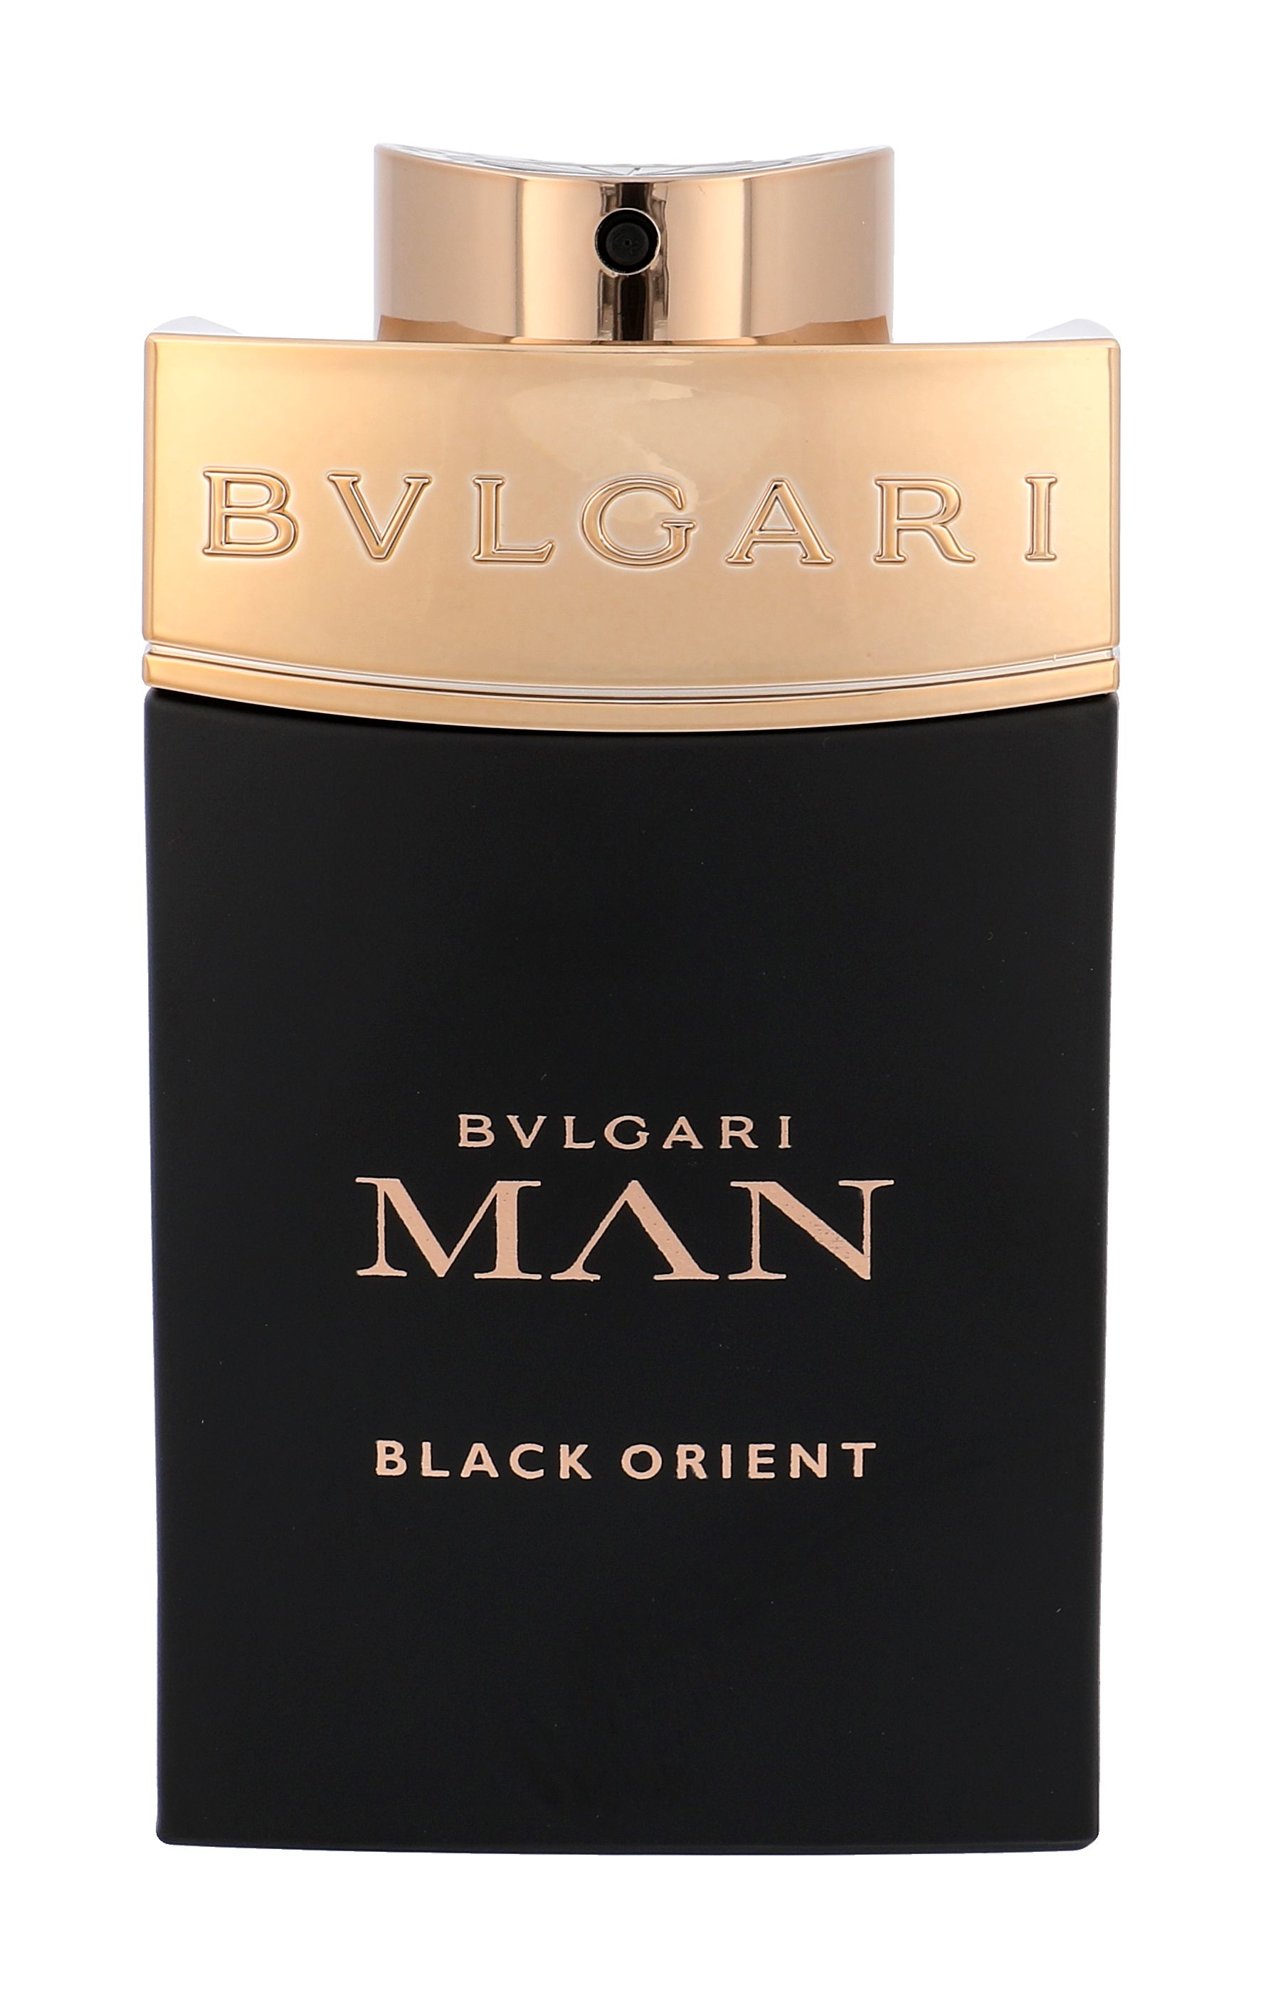 Bvlgari Man Black Orient 100ml Kvepalai Vyrams Parfum Testeris